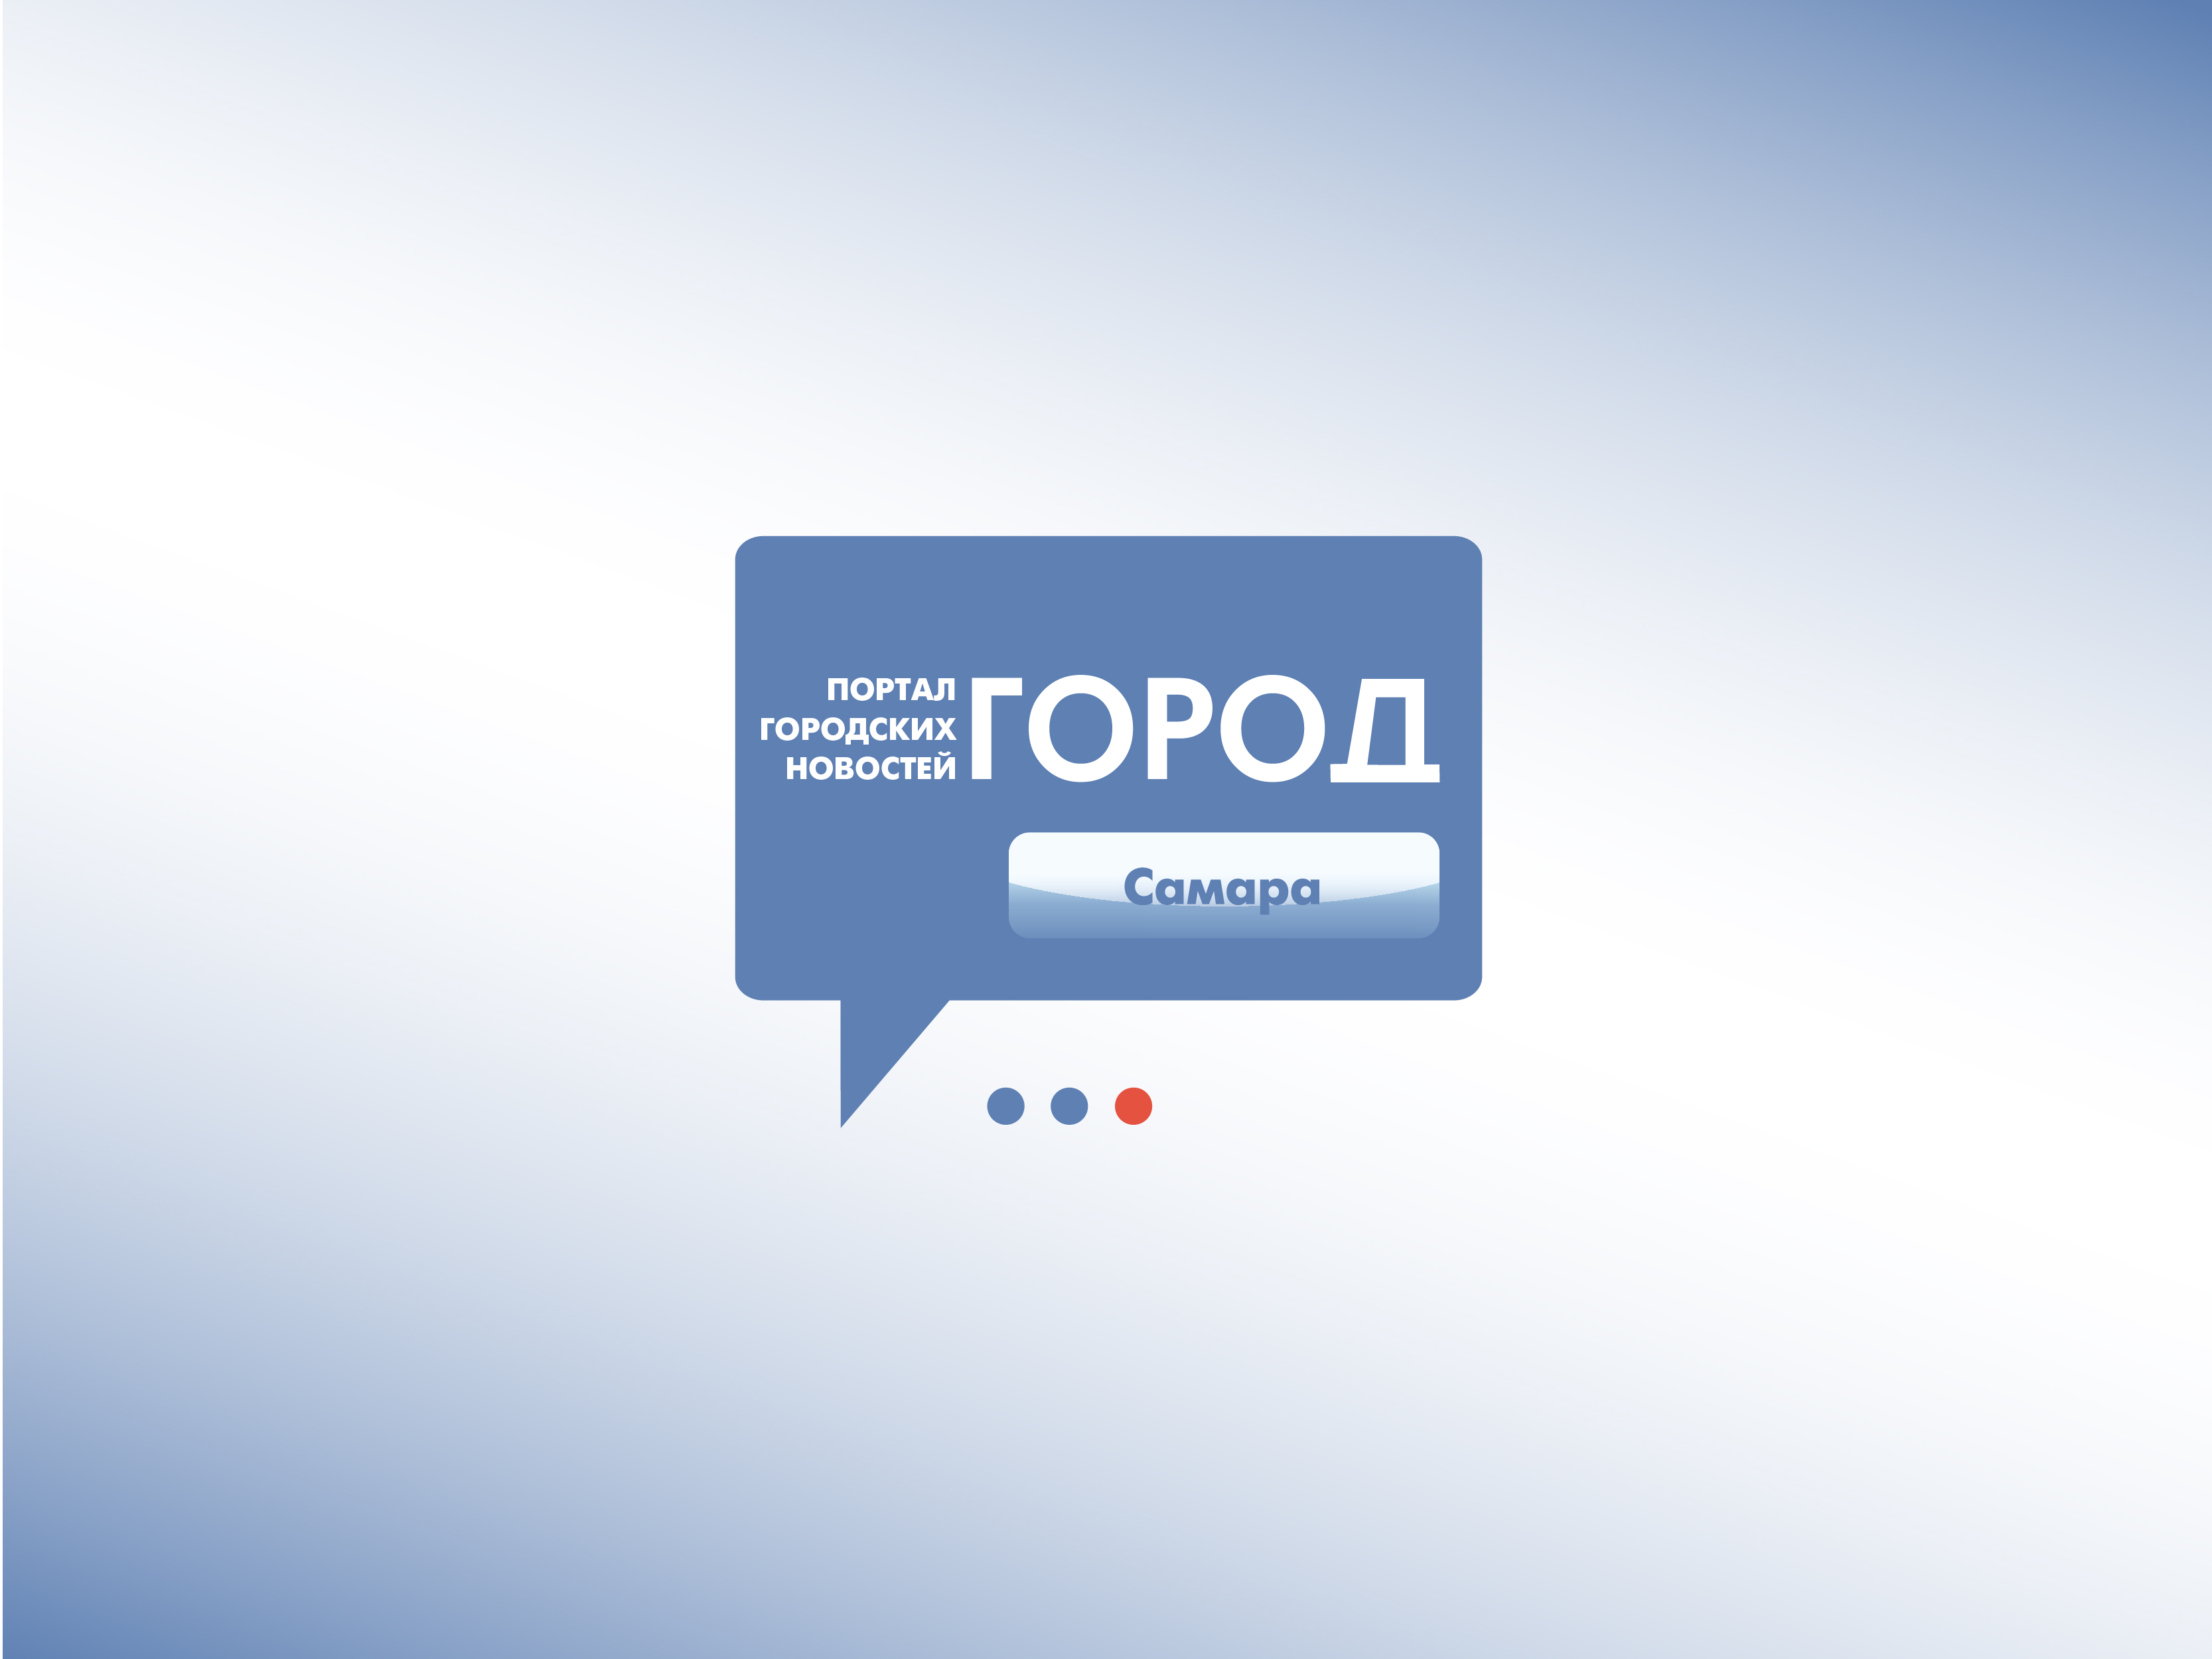 Раземщение рекламы Реклама на сайте progorodsamara.ru, г. Самара